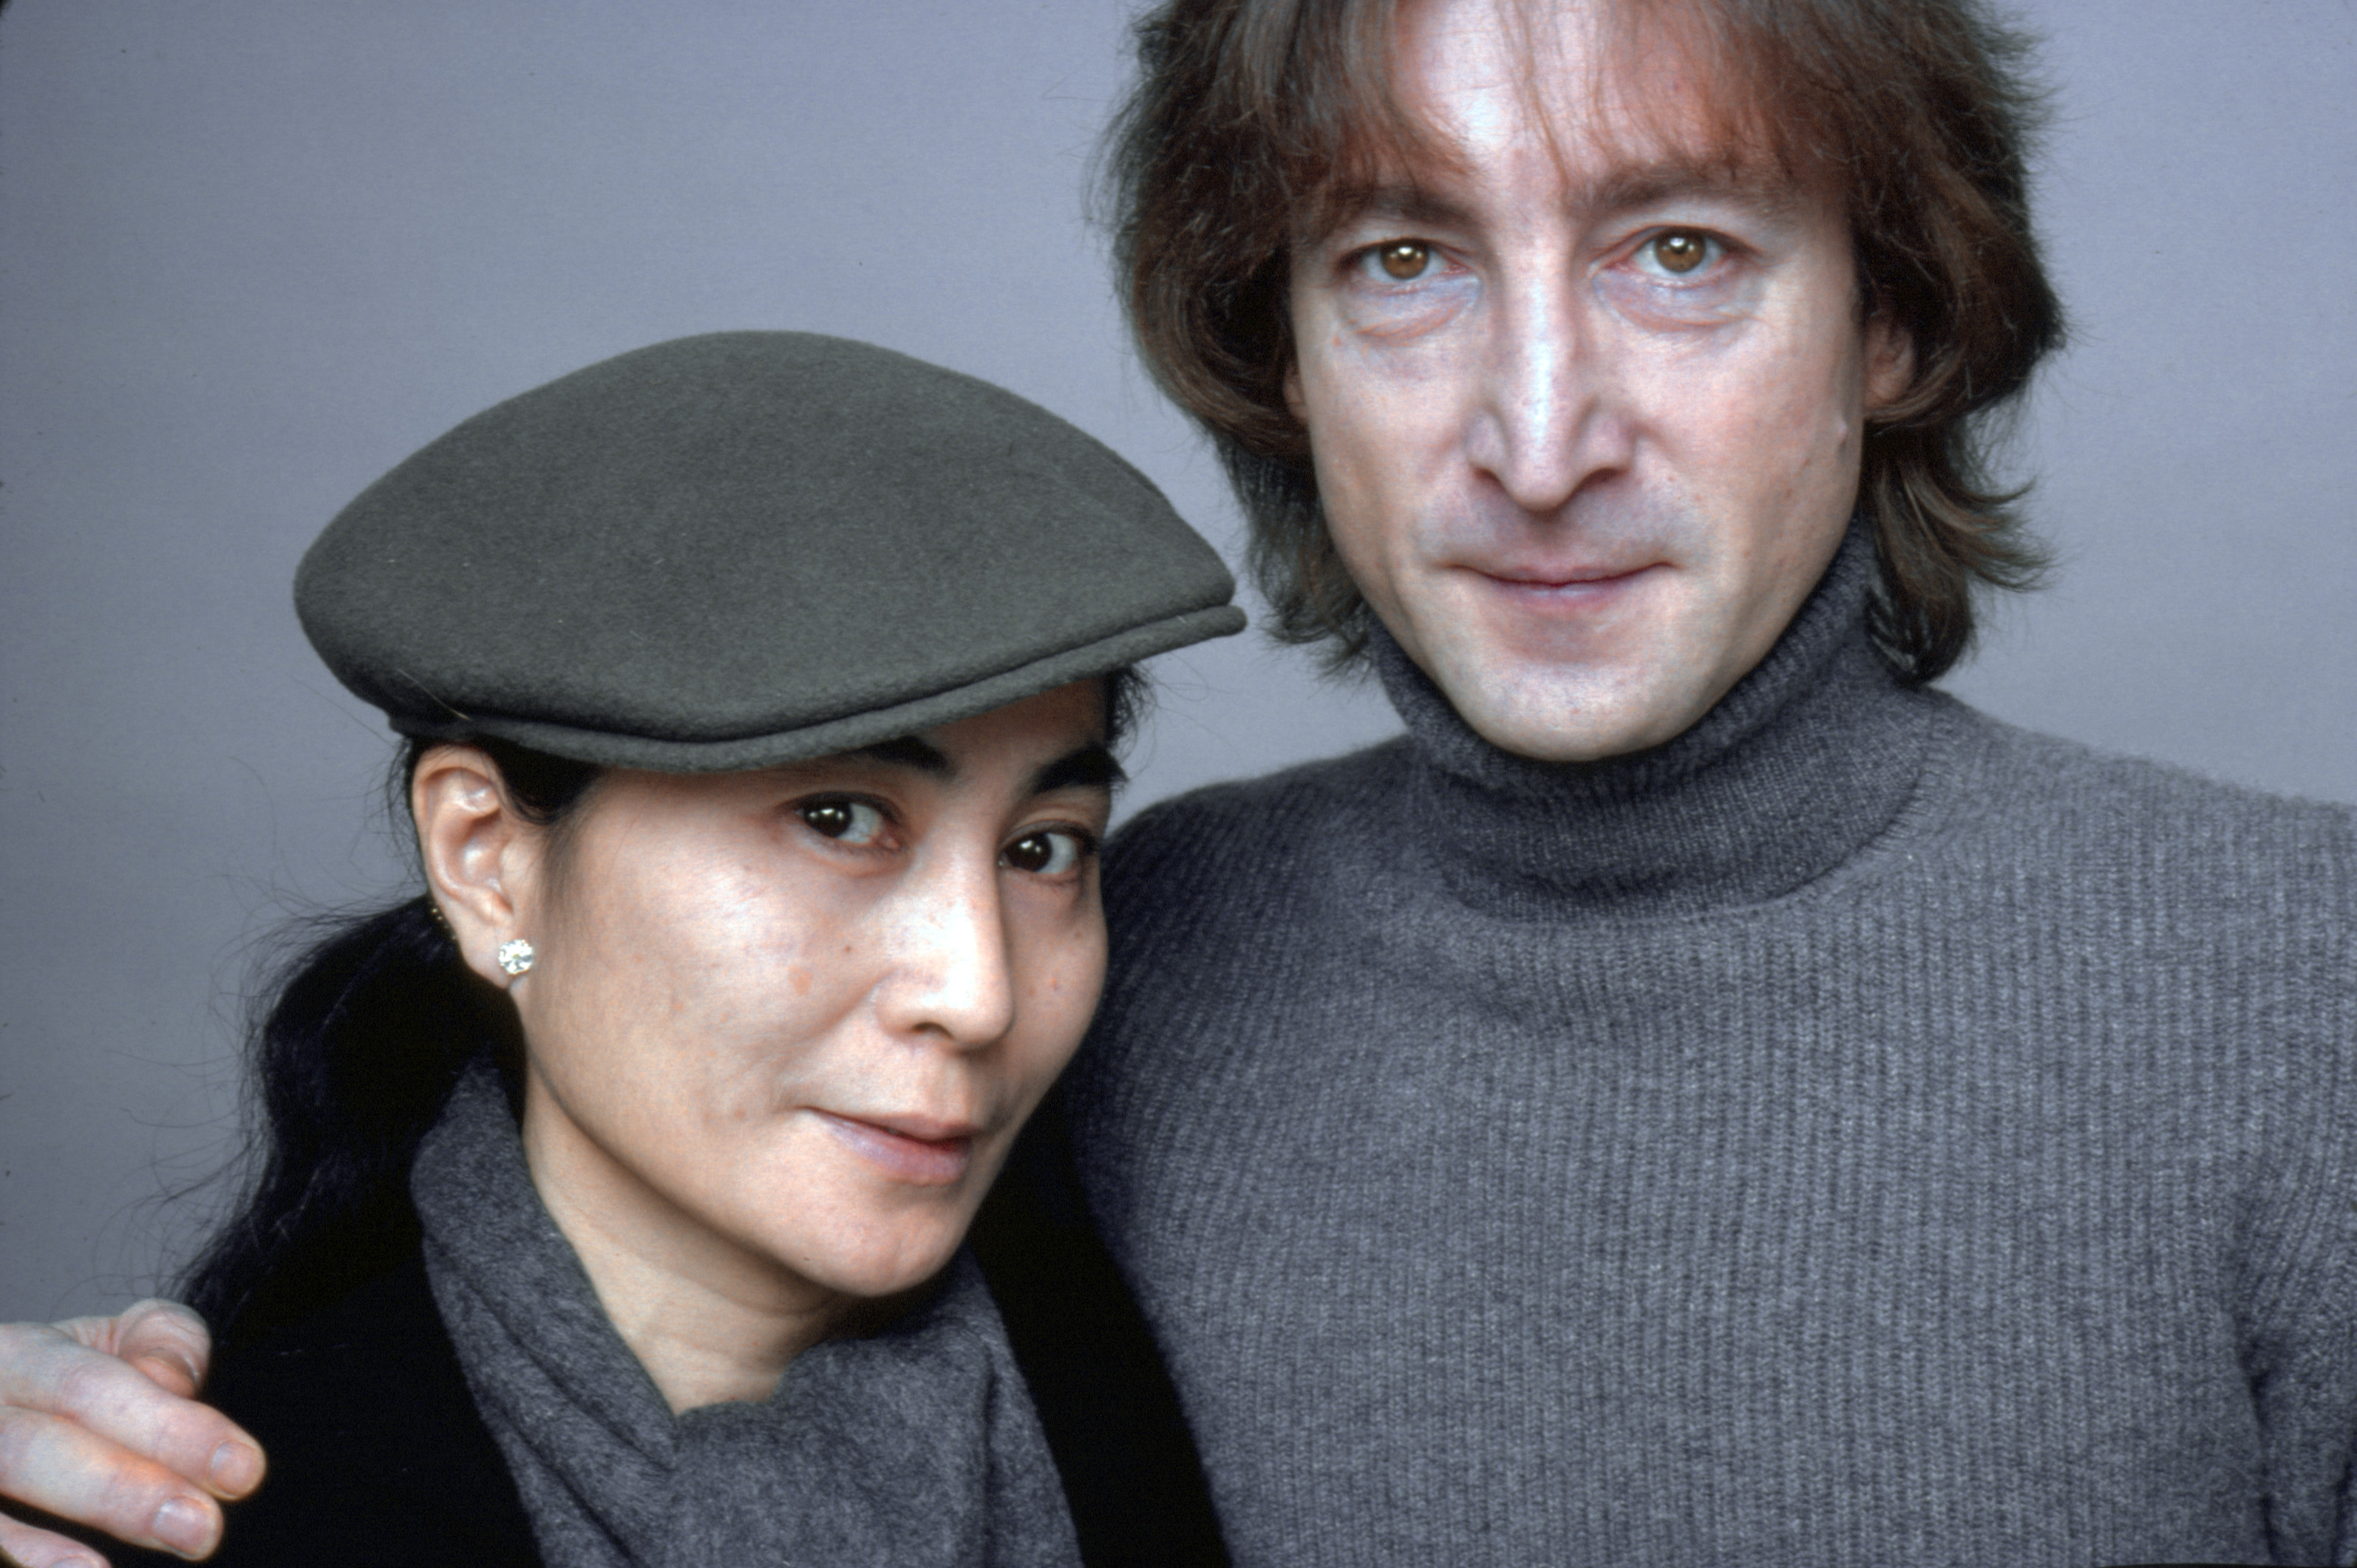 John Lennon putting his arm around Yoko Ono